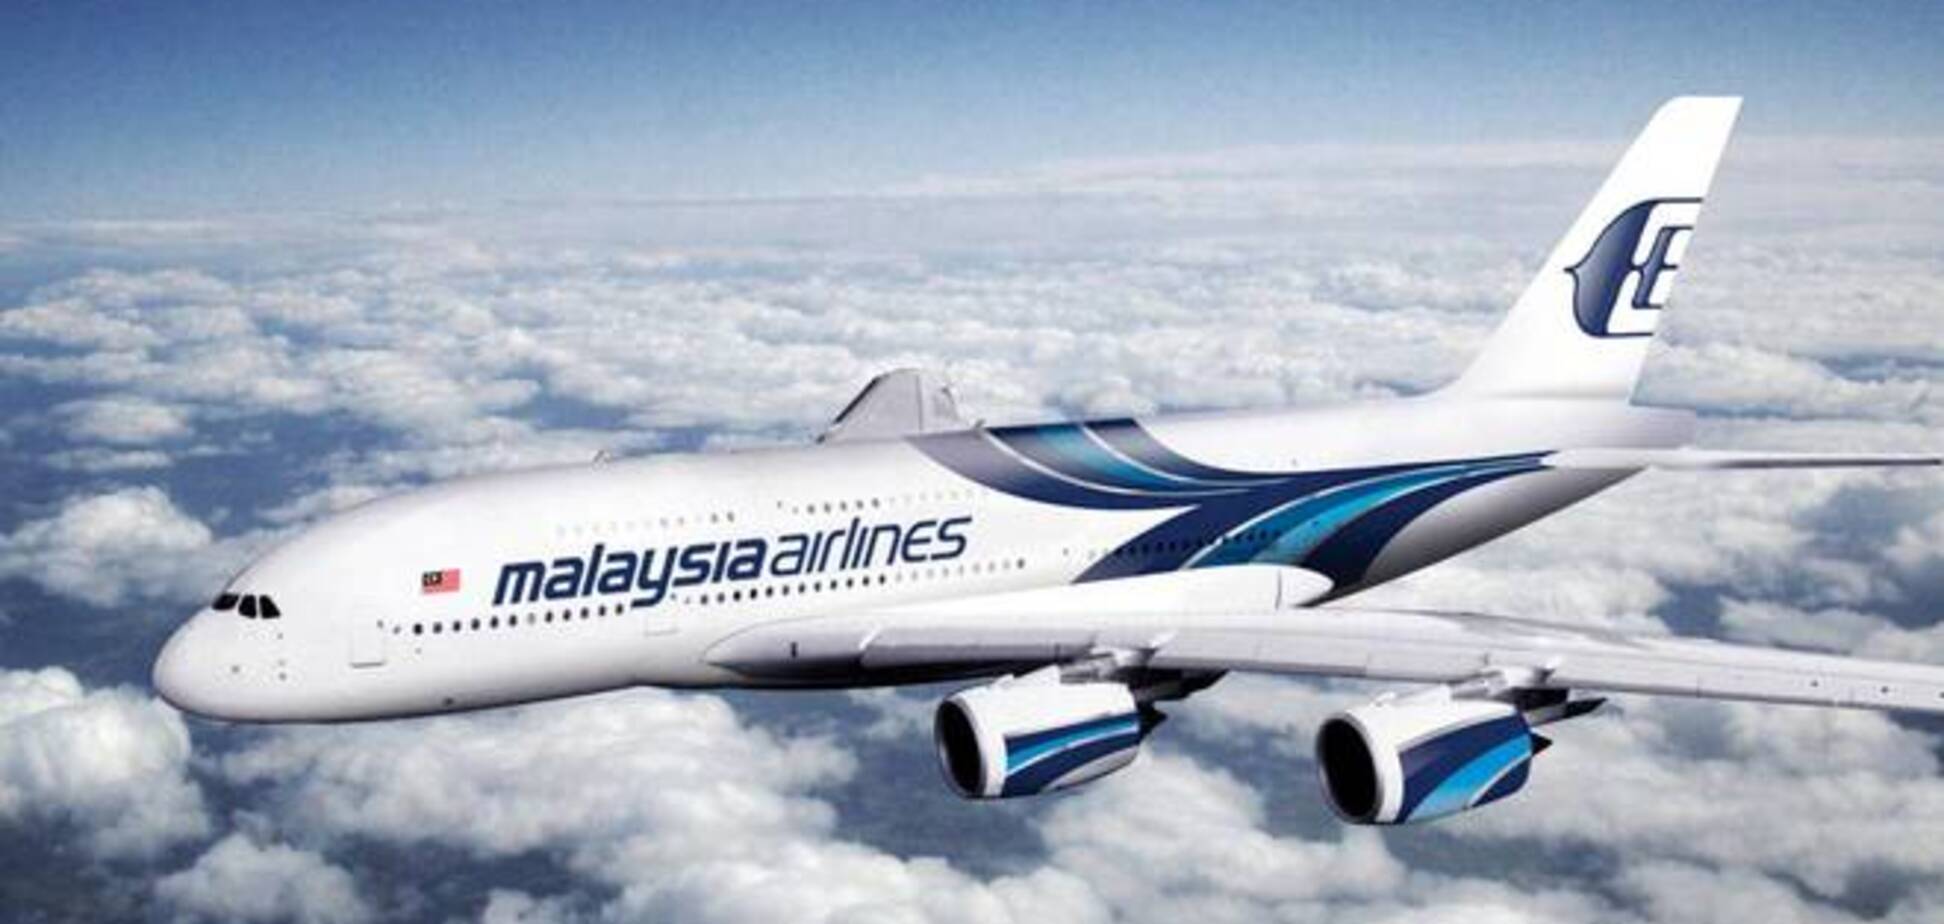 'Малайзийские авиалинии' утверждают, что ICAO объявила маршрут Boeing-777 безопасным